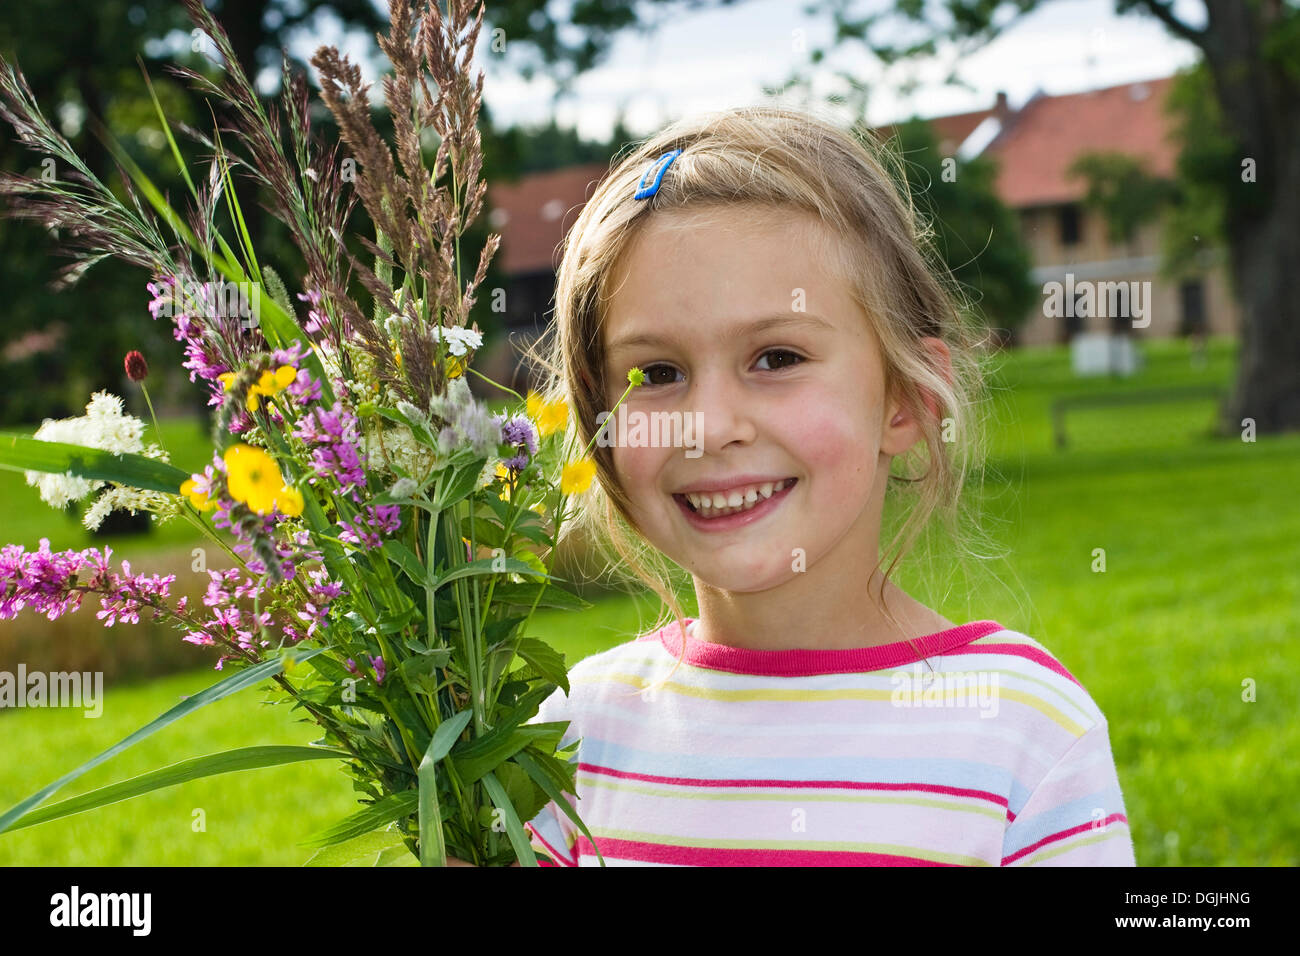 Ragazza bionda, 6, tenendo in mano un mazzo di fiori nella parte anteriore di una casa colonica, Bavaria Foto Stock